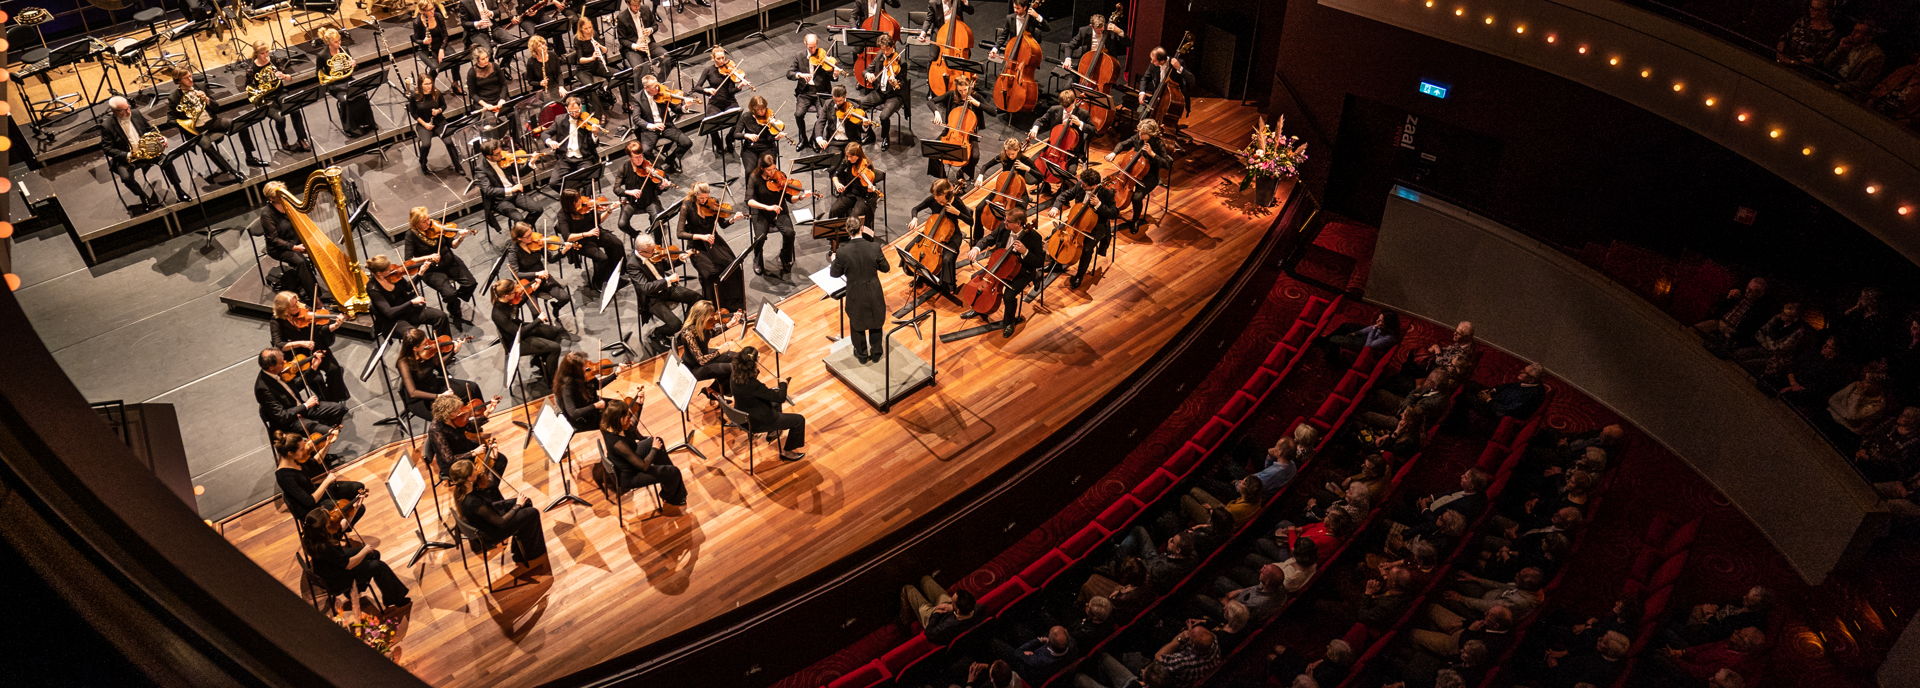 De orkestbak van de Tamboerzaal is uitermate geschikt bij grote orkesten en gezelschappen